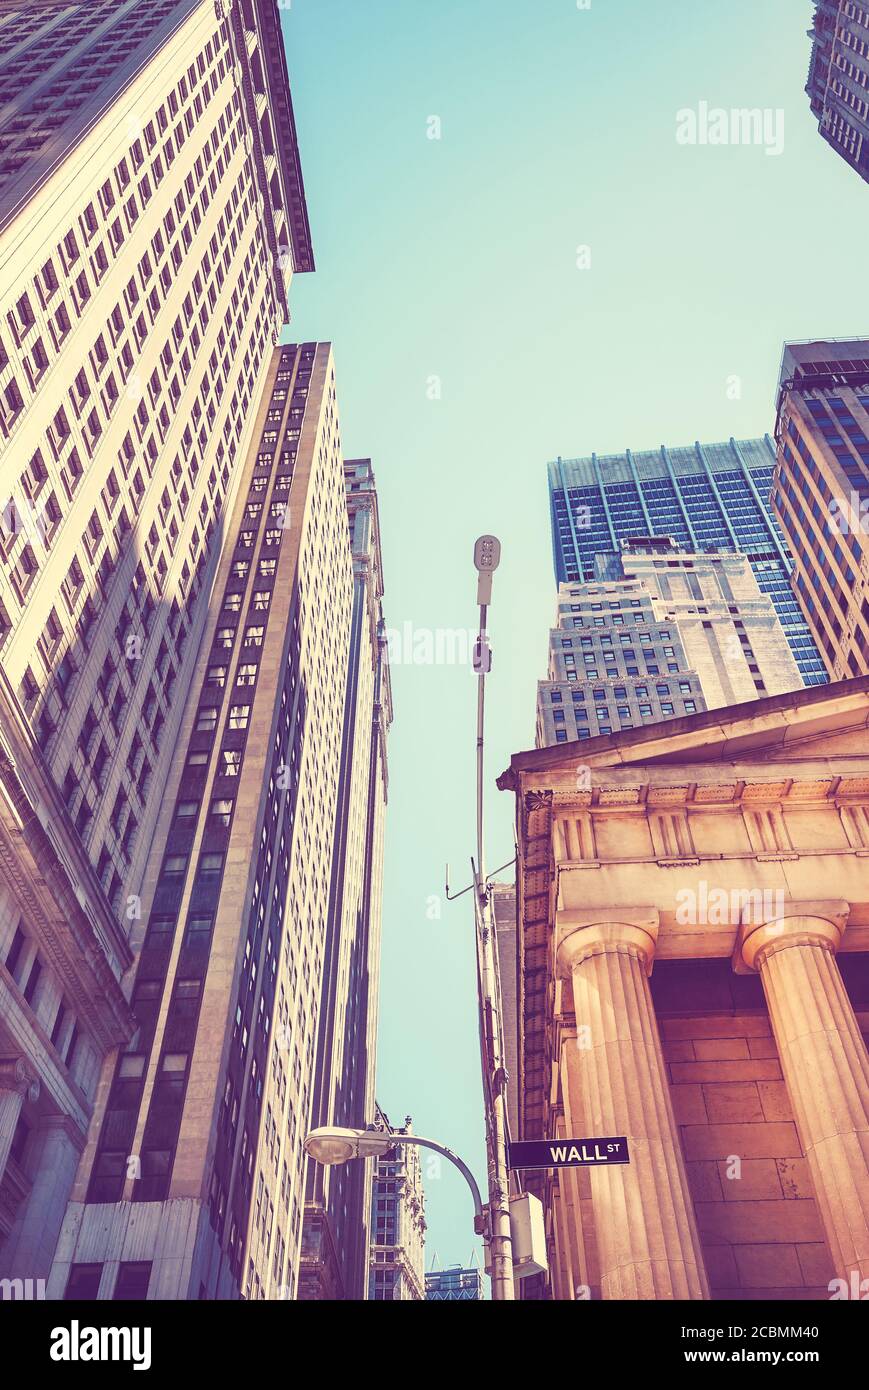 Vintage getöntes Bild der Wall Street in Manhattan, New York City, USA. Stockfoto